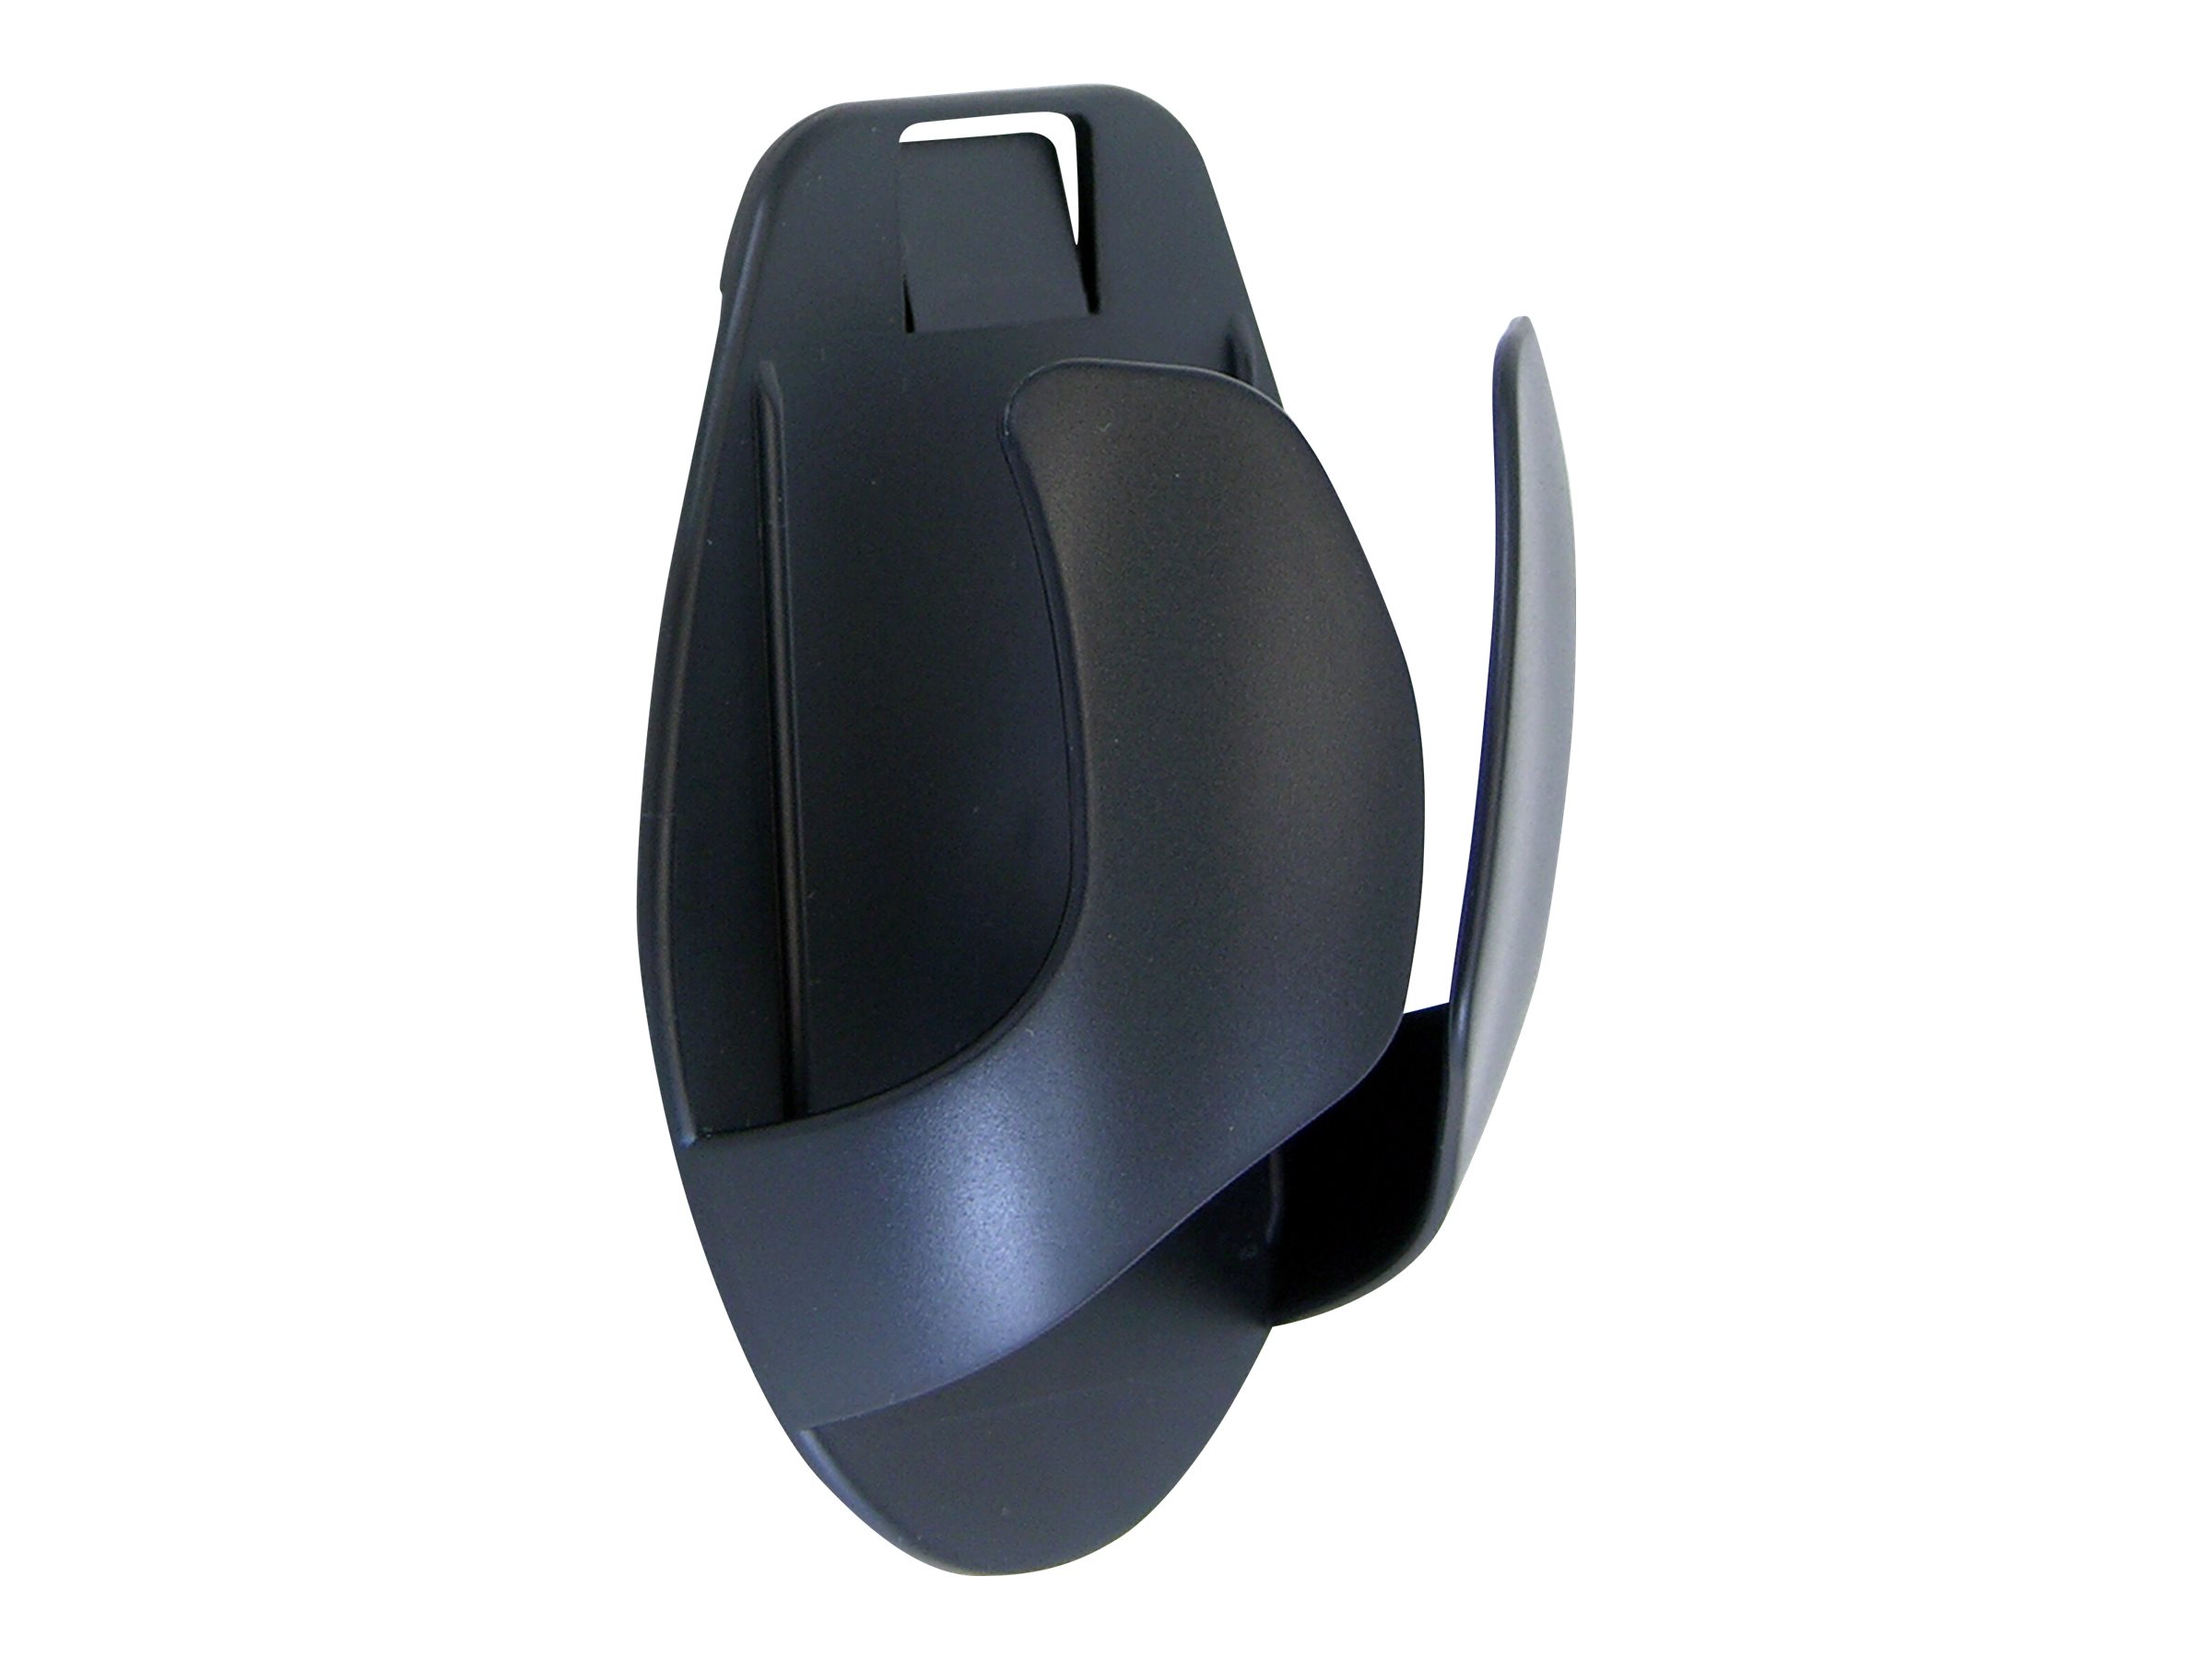 Ergotron - Porte-souris - montable en surface - noir - 99-033-085 - Accessoires pour clavier et souris